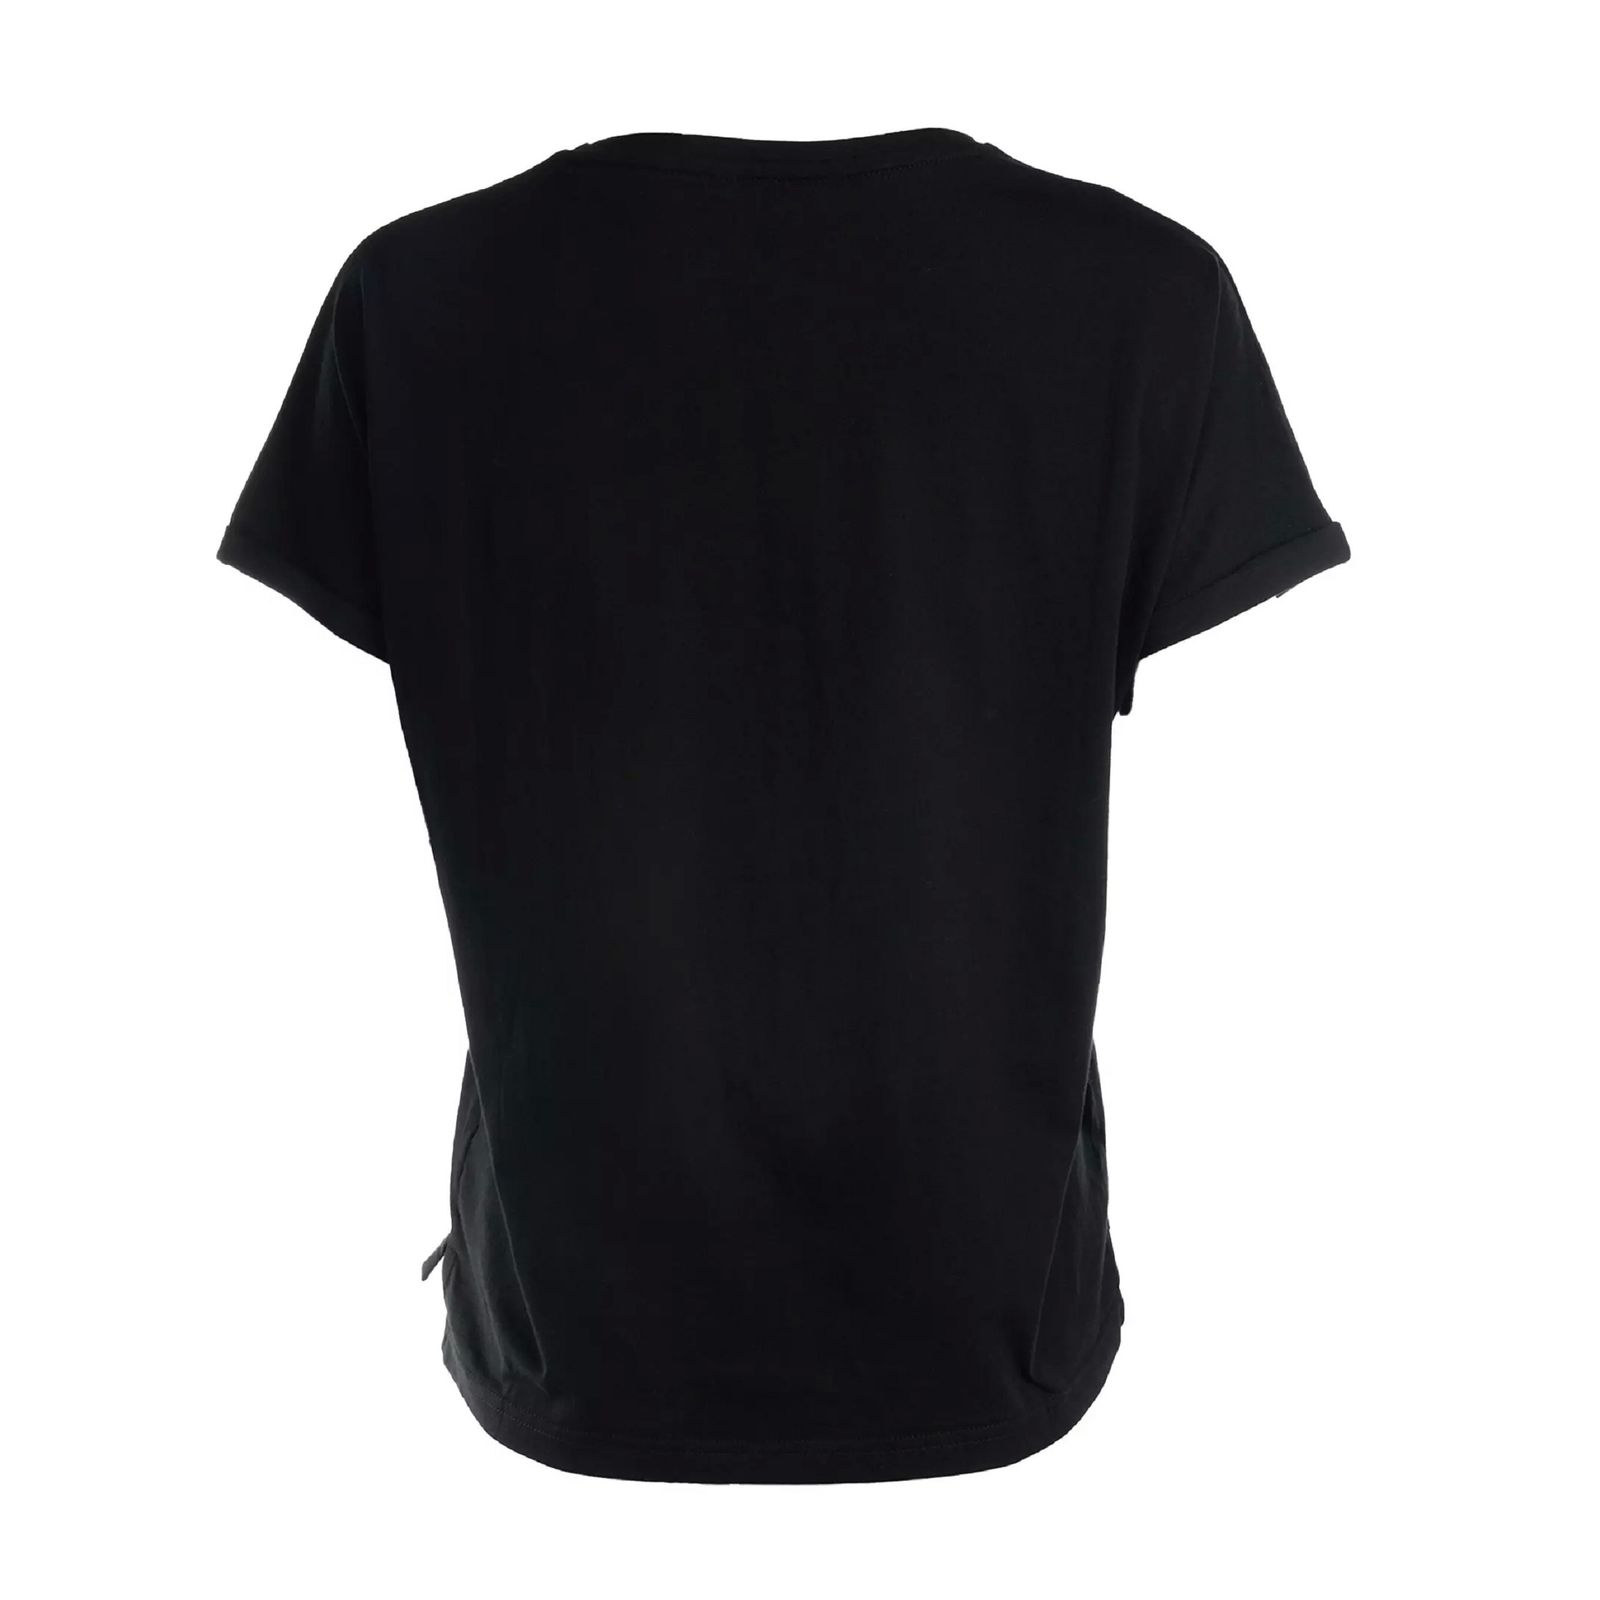 تی شرت آستین کوتاه زنانه جوتی جینز مدل یقه گرد کد 1551352 رنگ مشکی -  - 2